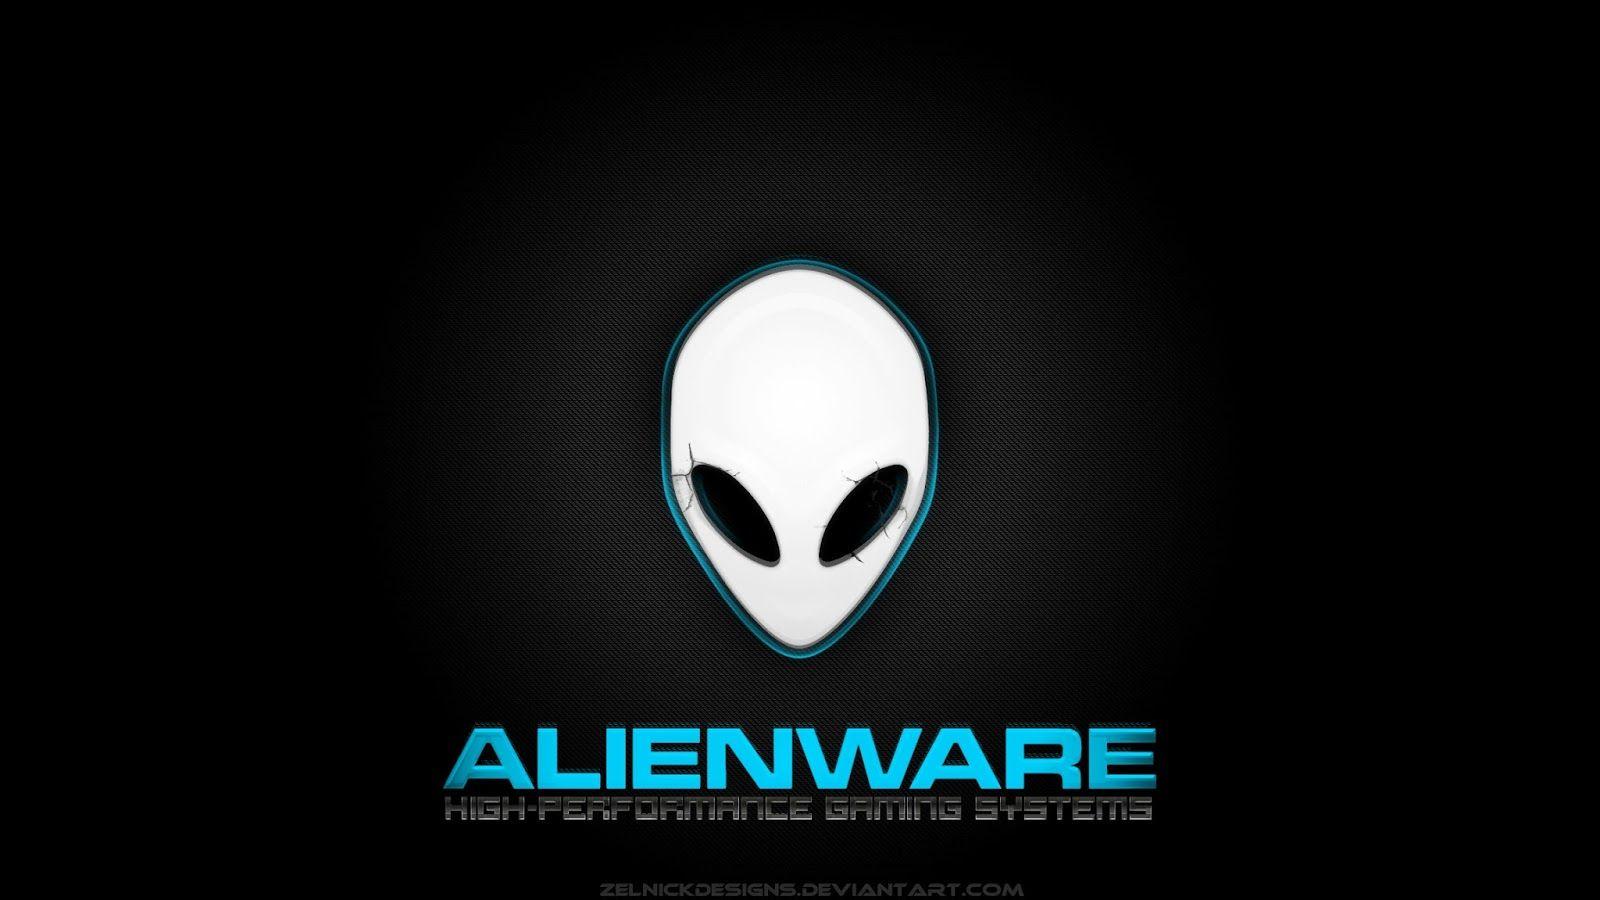 HD Alienware Wallpaper (73+ images)